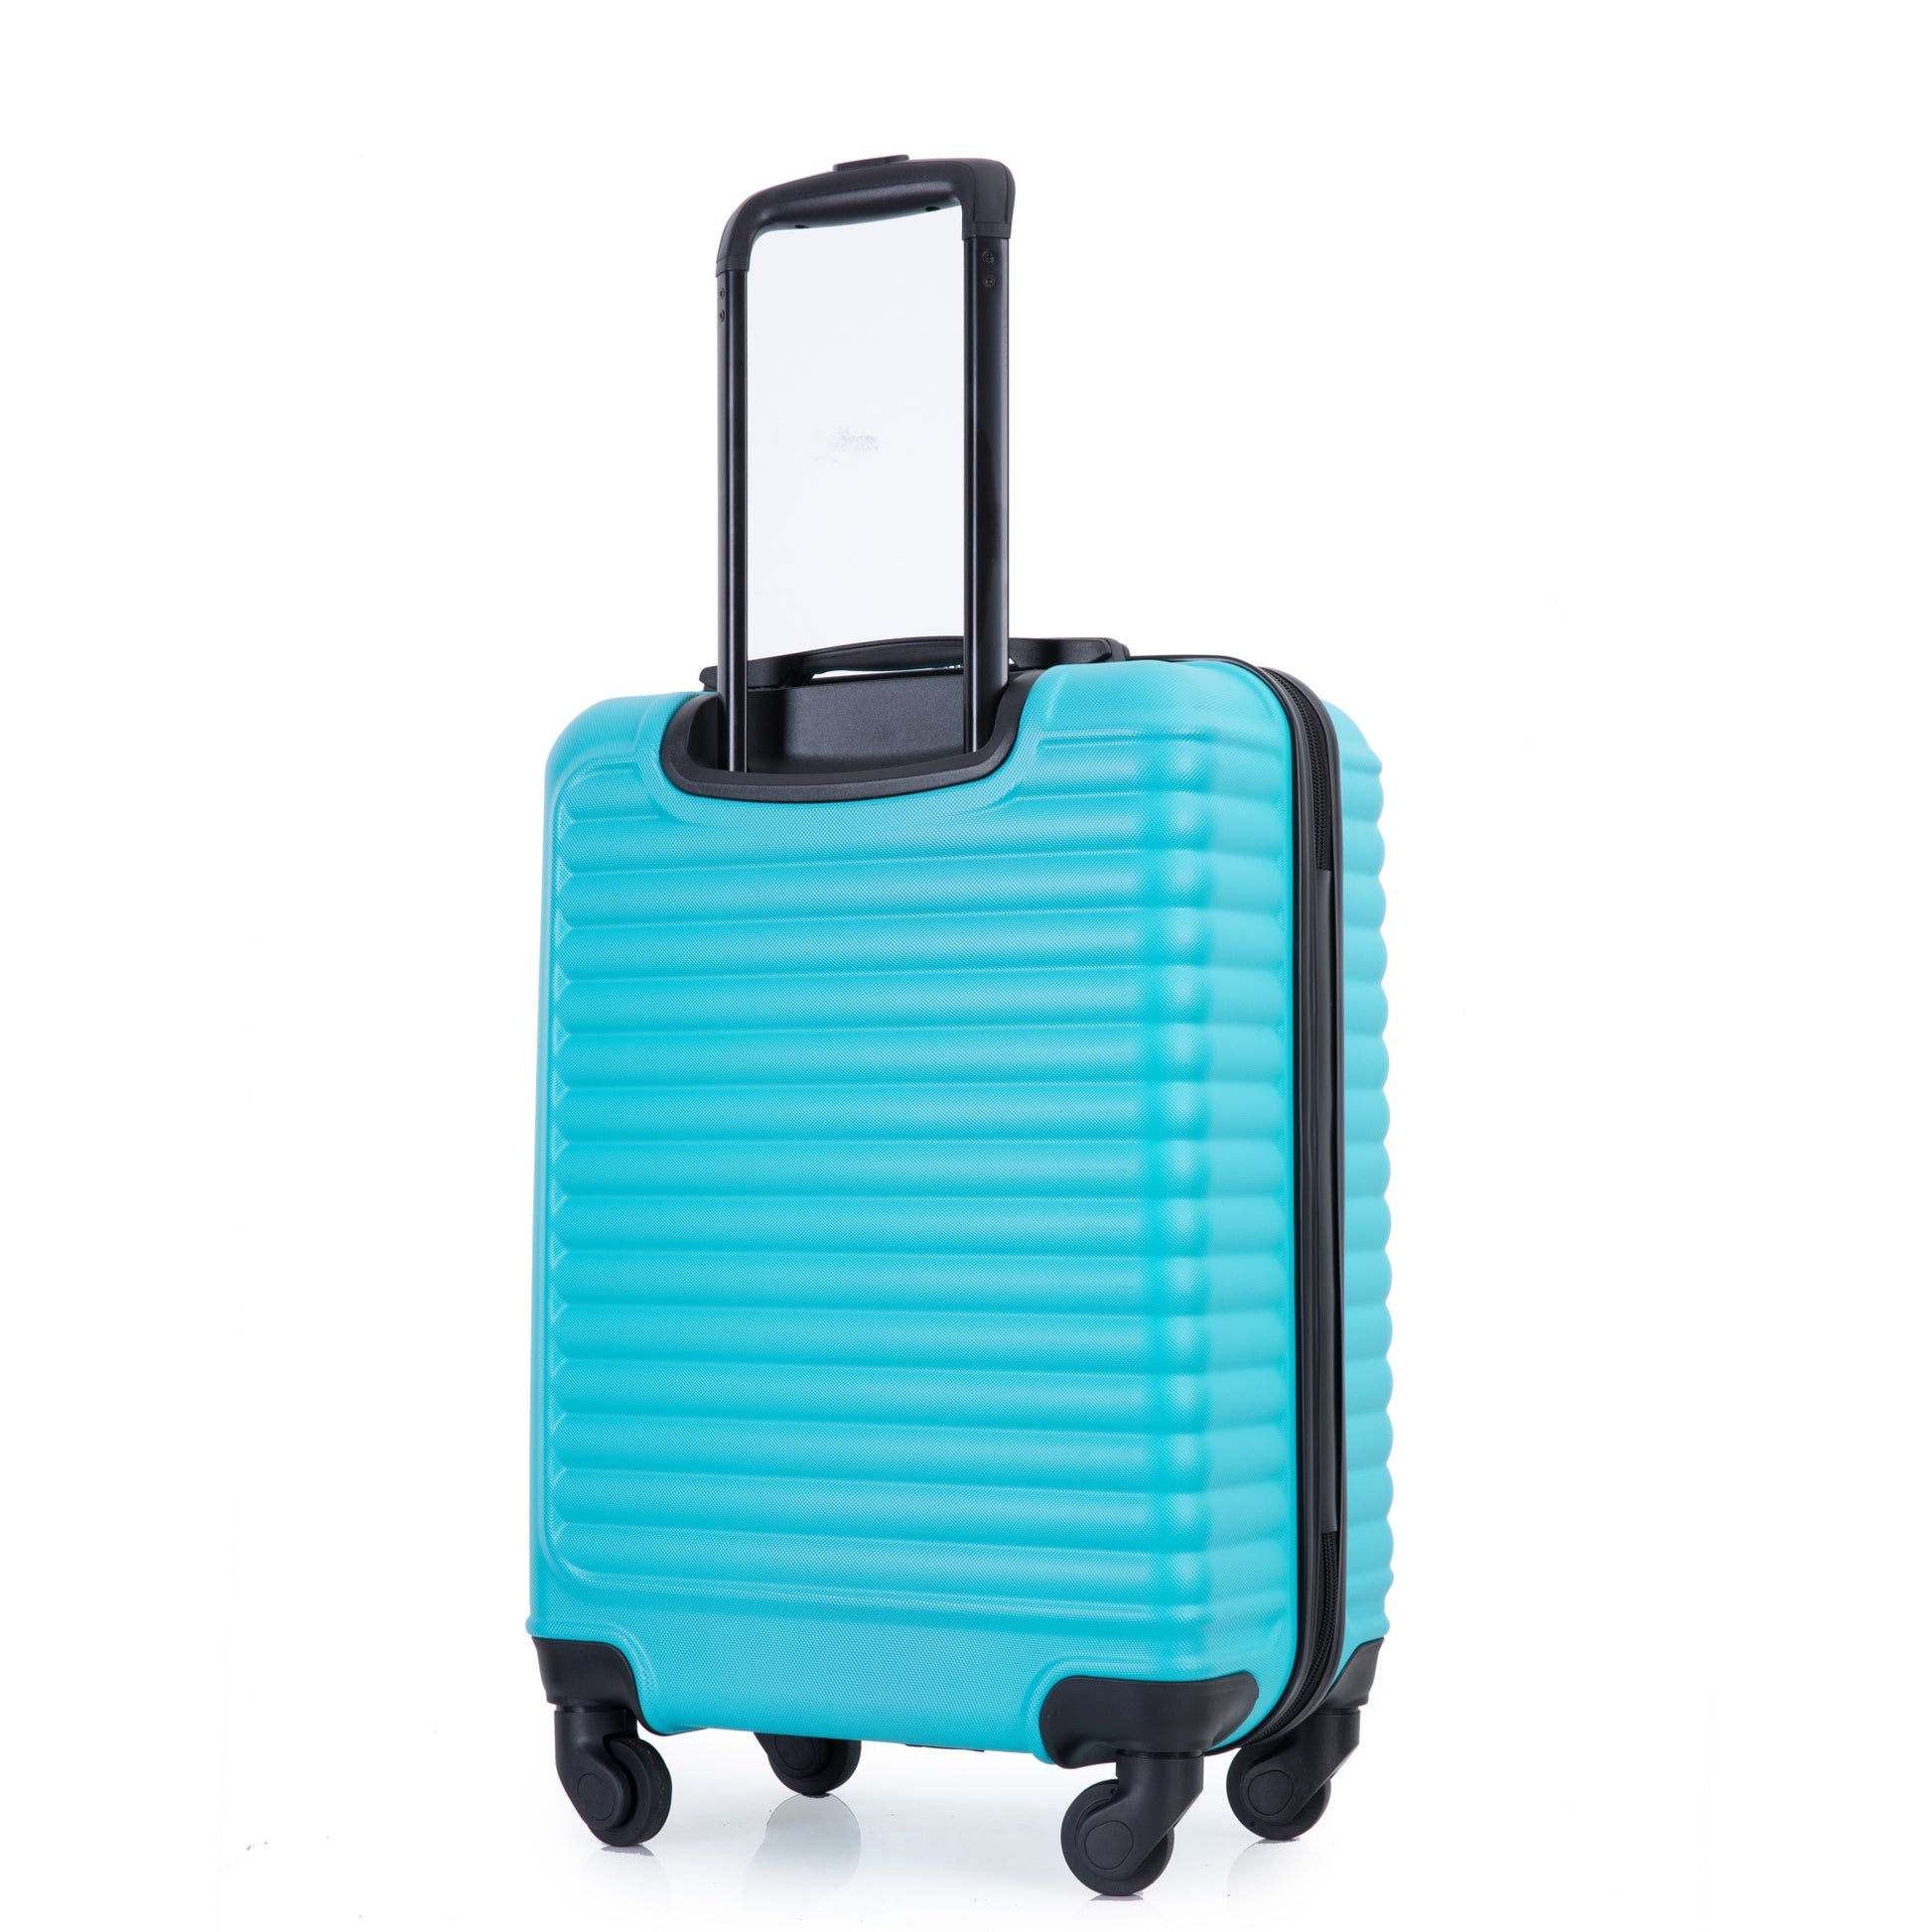 19" Three Piece Carry On Luggage Lightweight